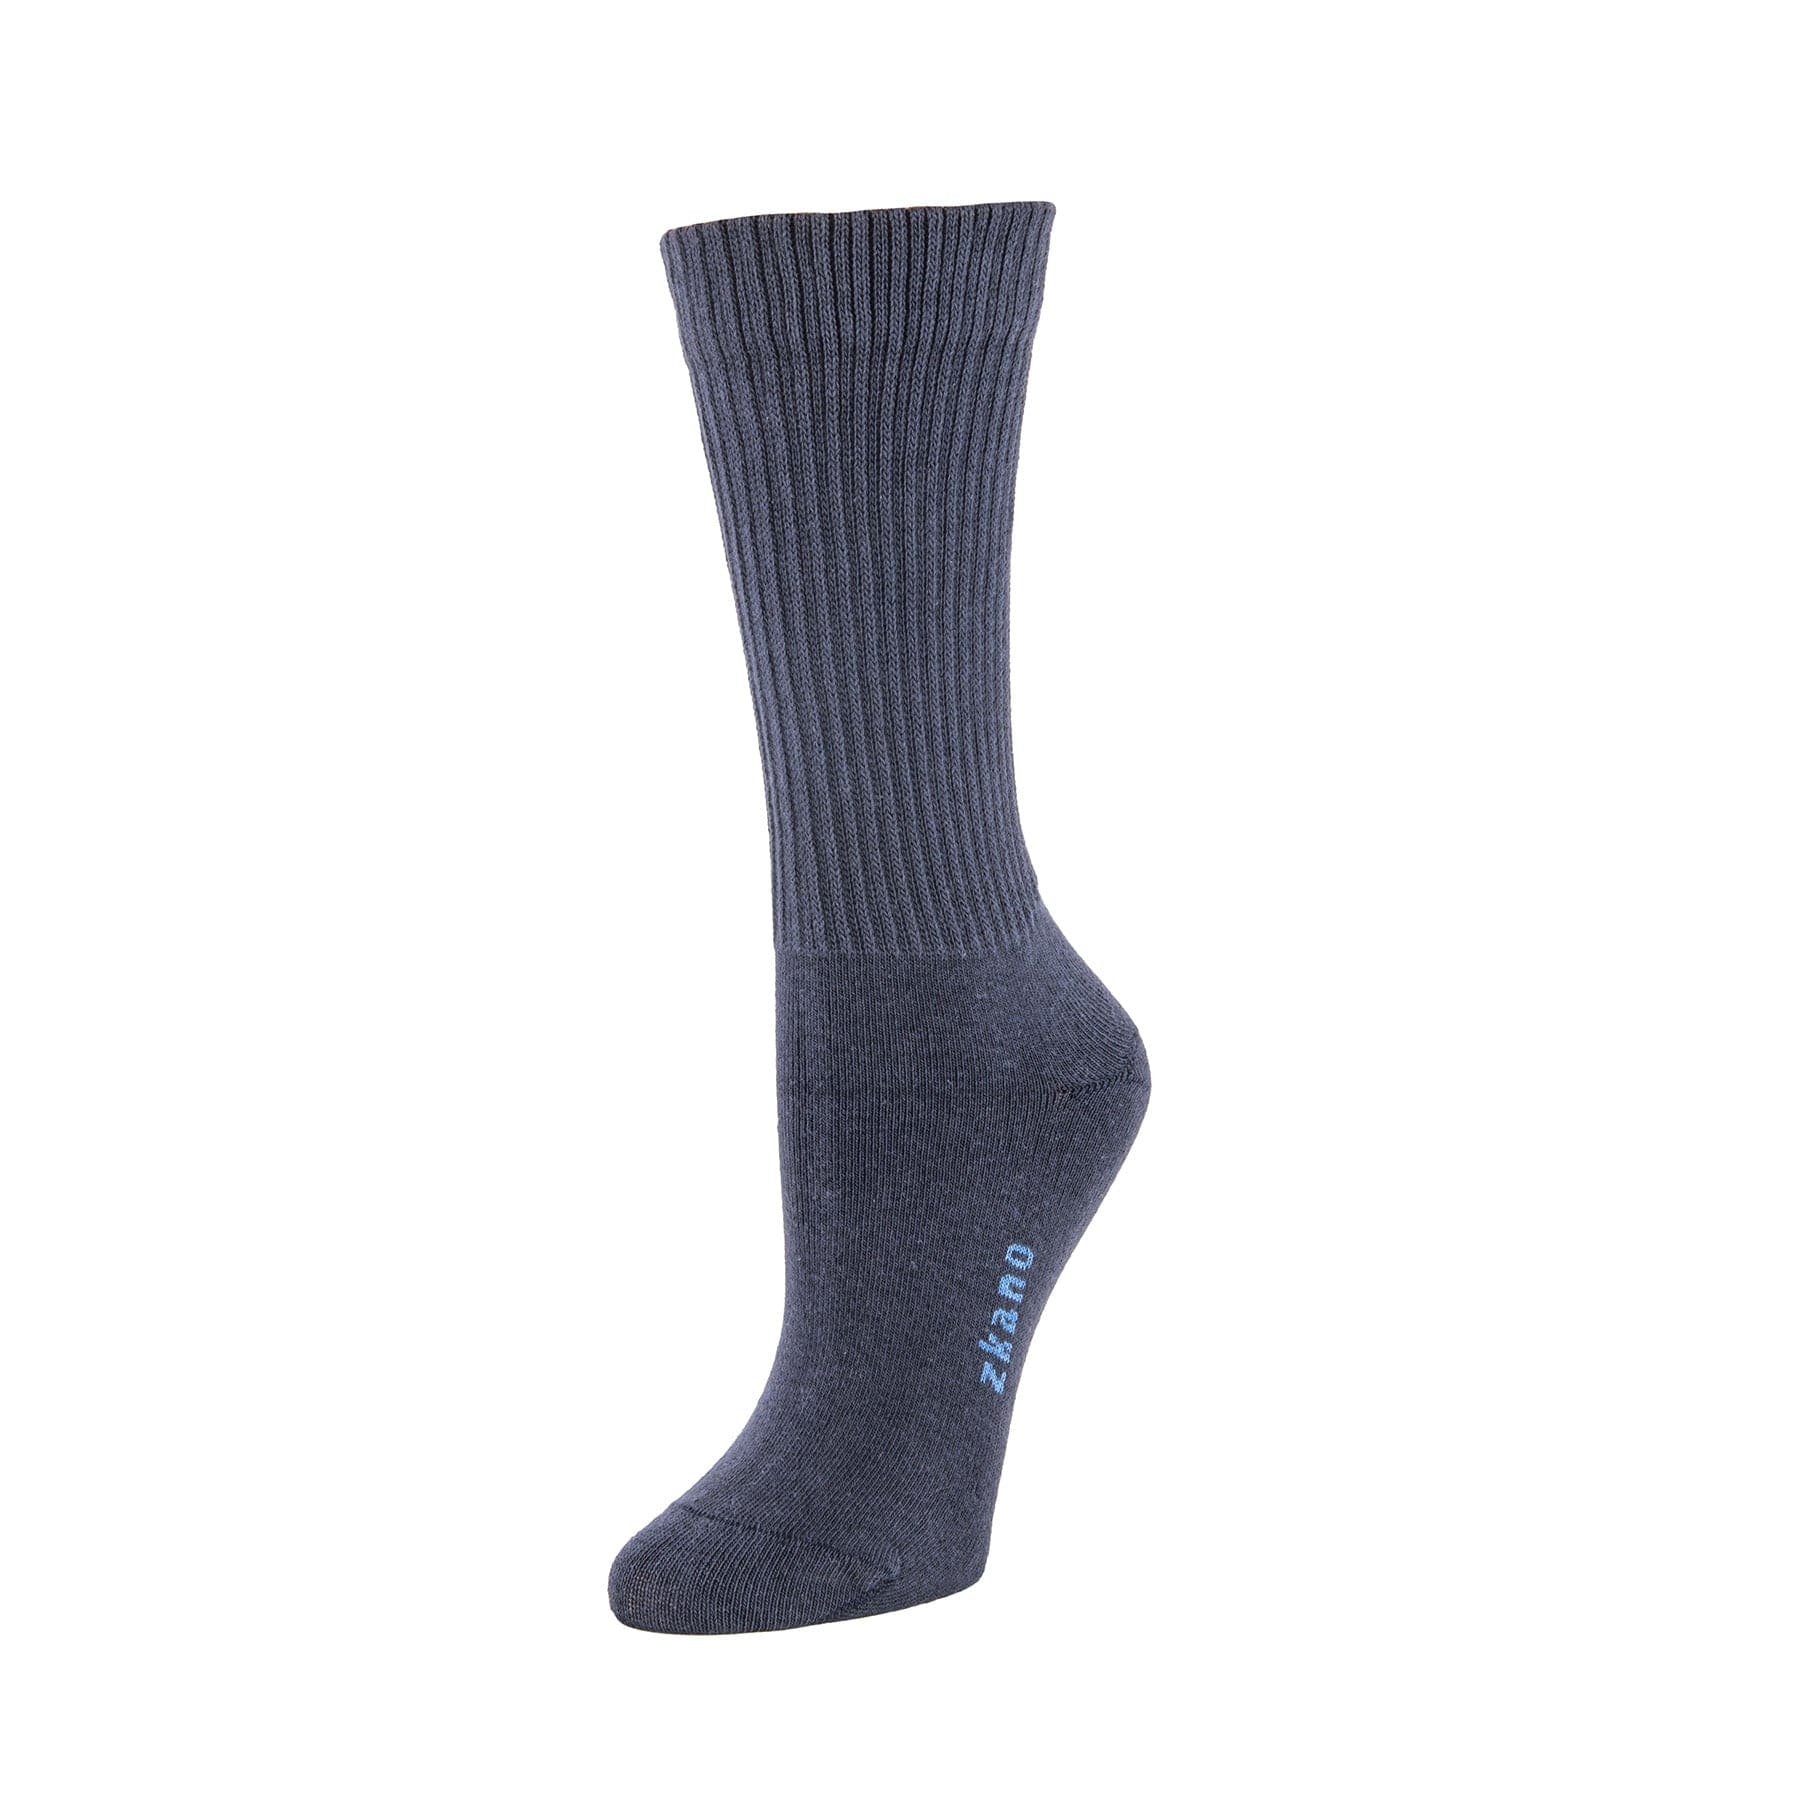 Rib Knit - Organic Cotton Crew Socks - Indigo – zkano socks